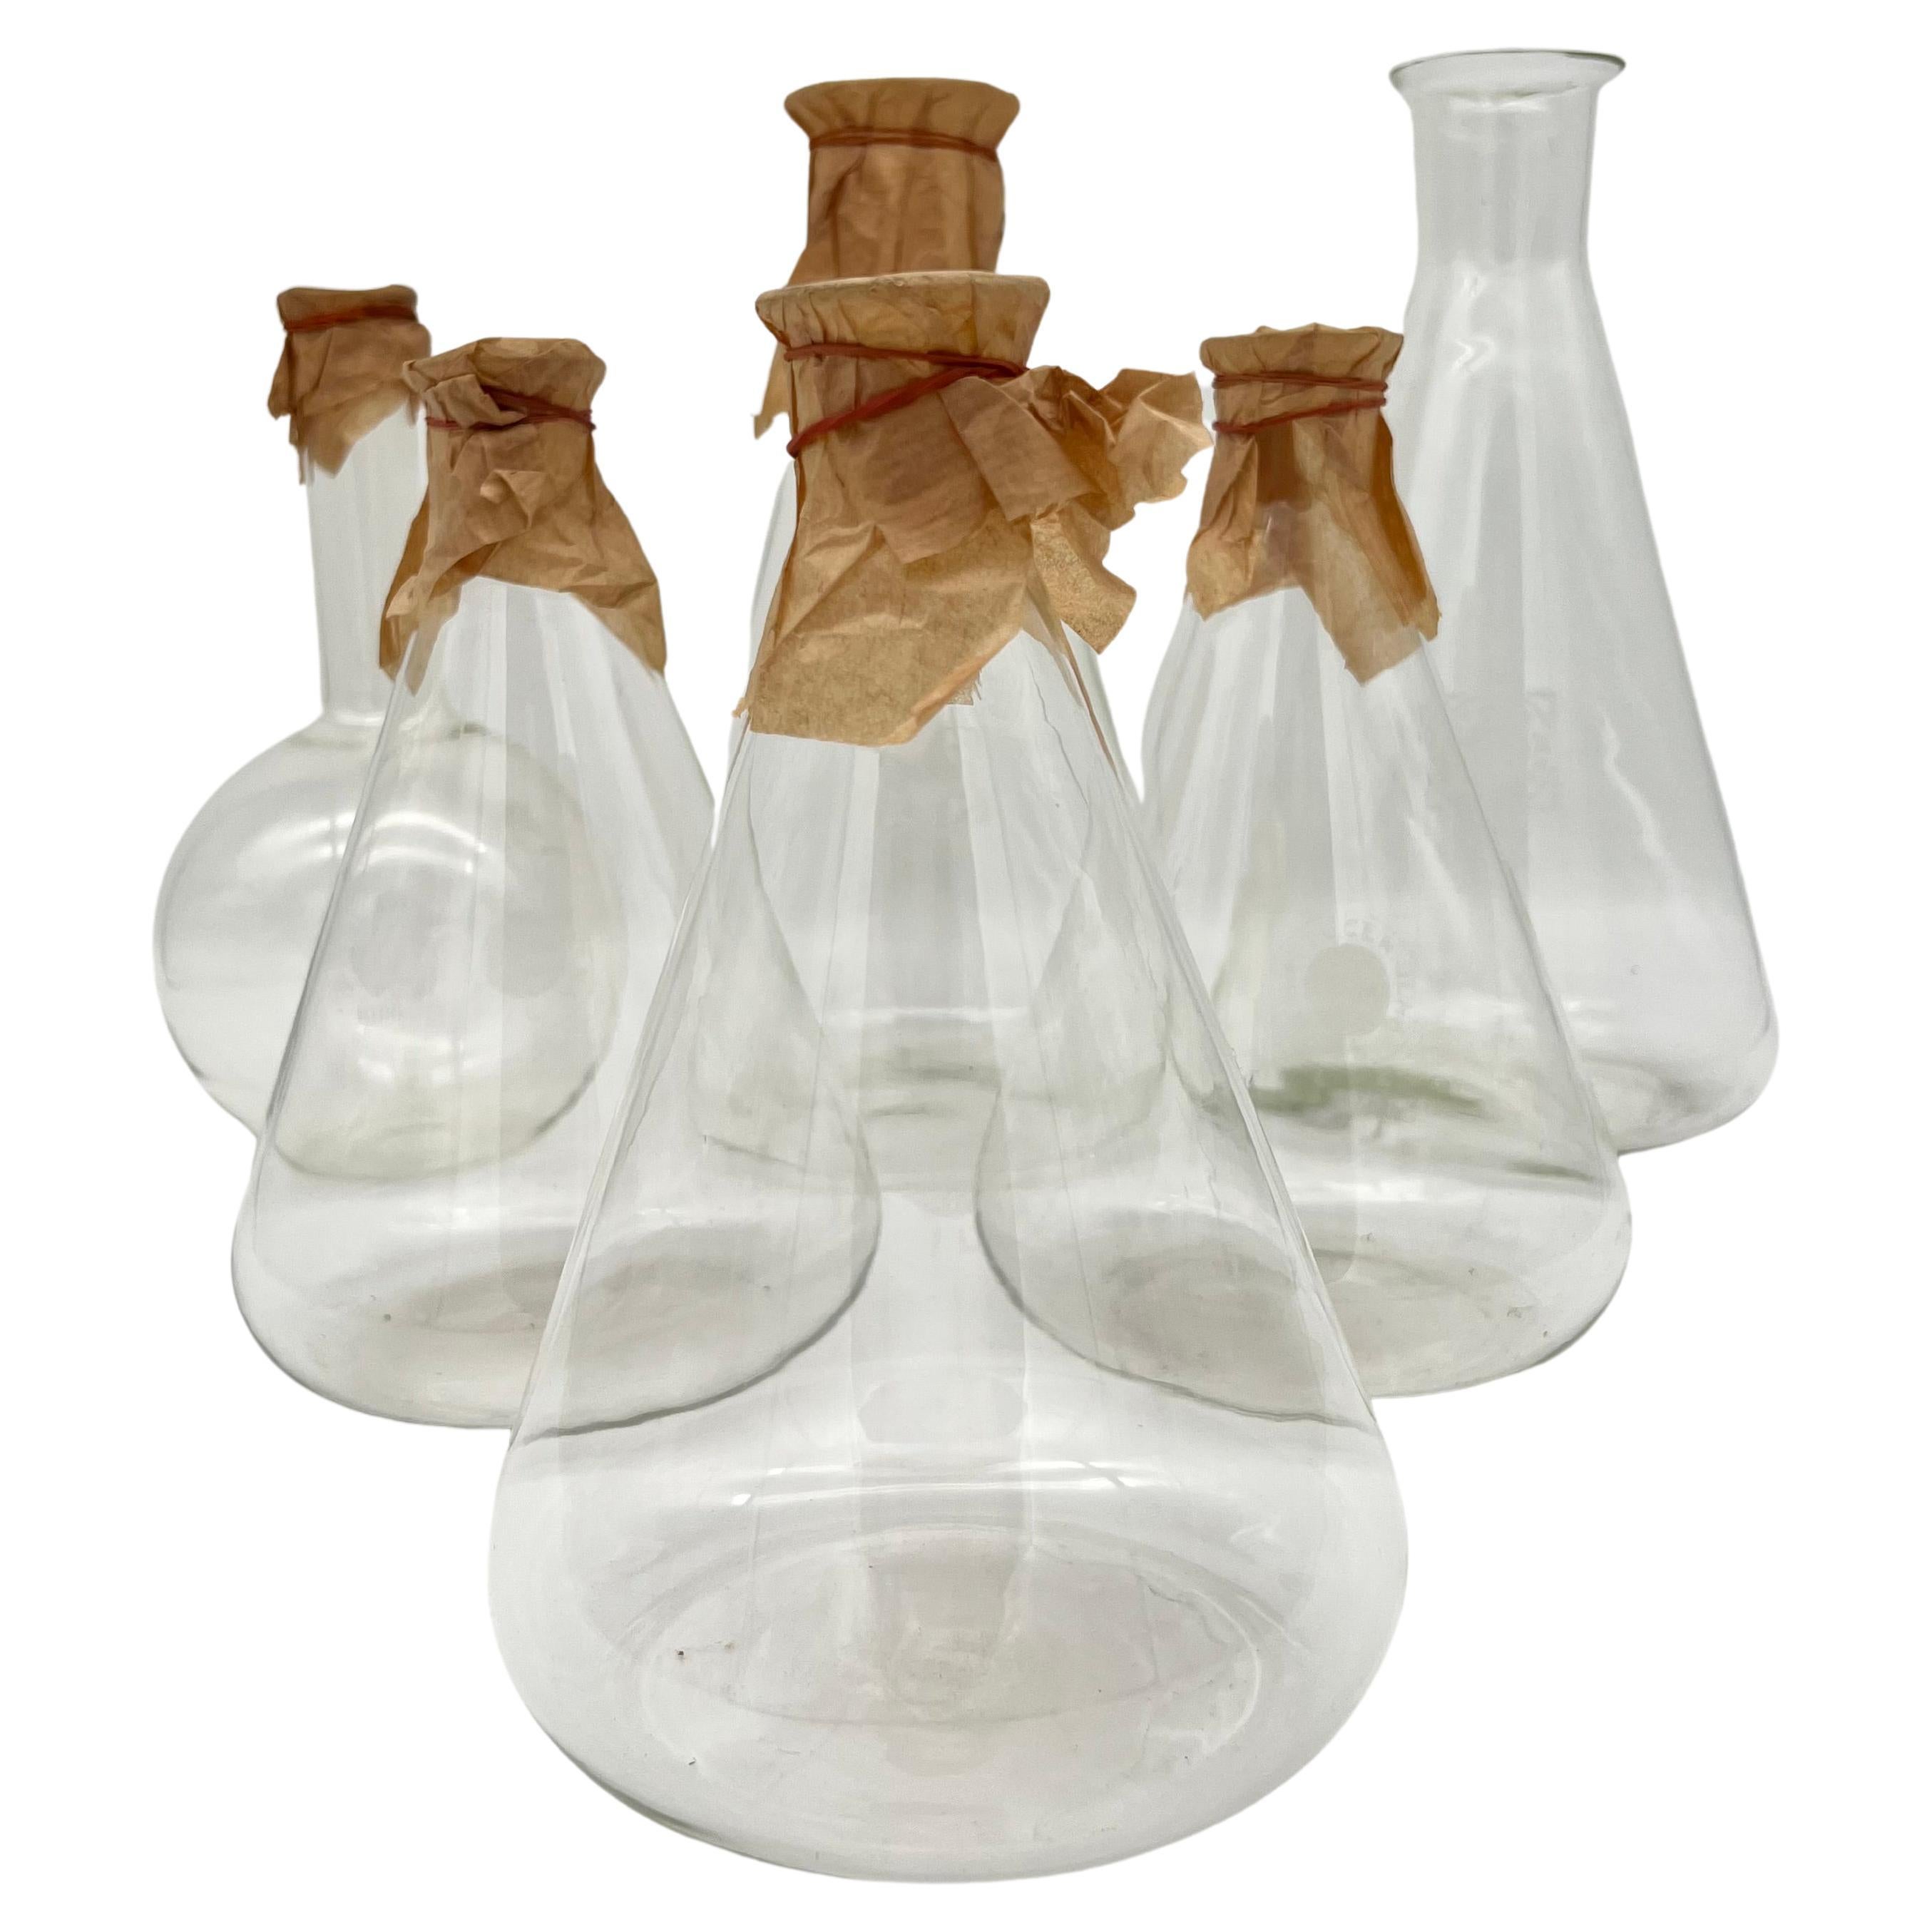 Ensemble de six anciennes bouteilles en verre de pharmacie, fabriquées en Allemagne vers 1900.

5 bouteilles de Jena (Schott et Gen Jena) et 1 verre de laboratoire Wirag. 
Le logo et le volume sont gravés sur toutes les bouteilles.

Peut être